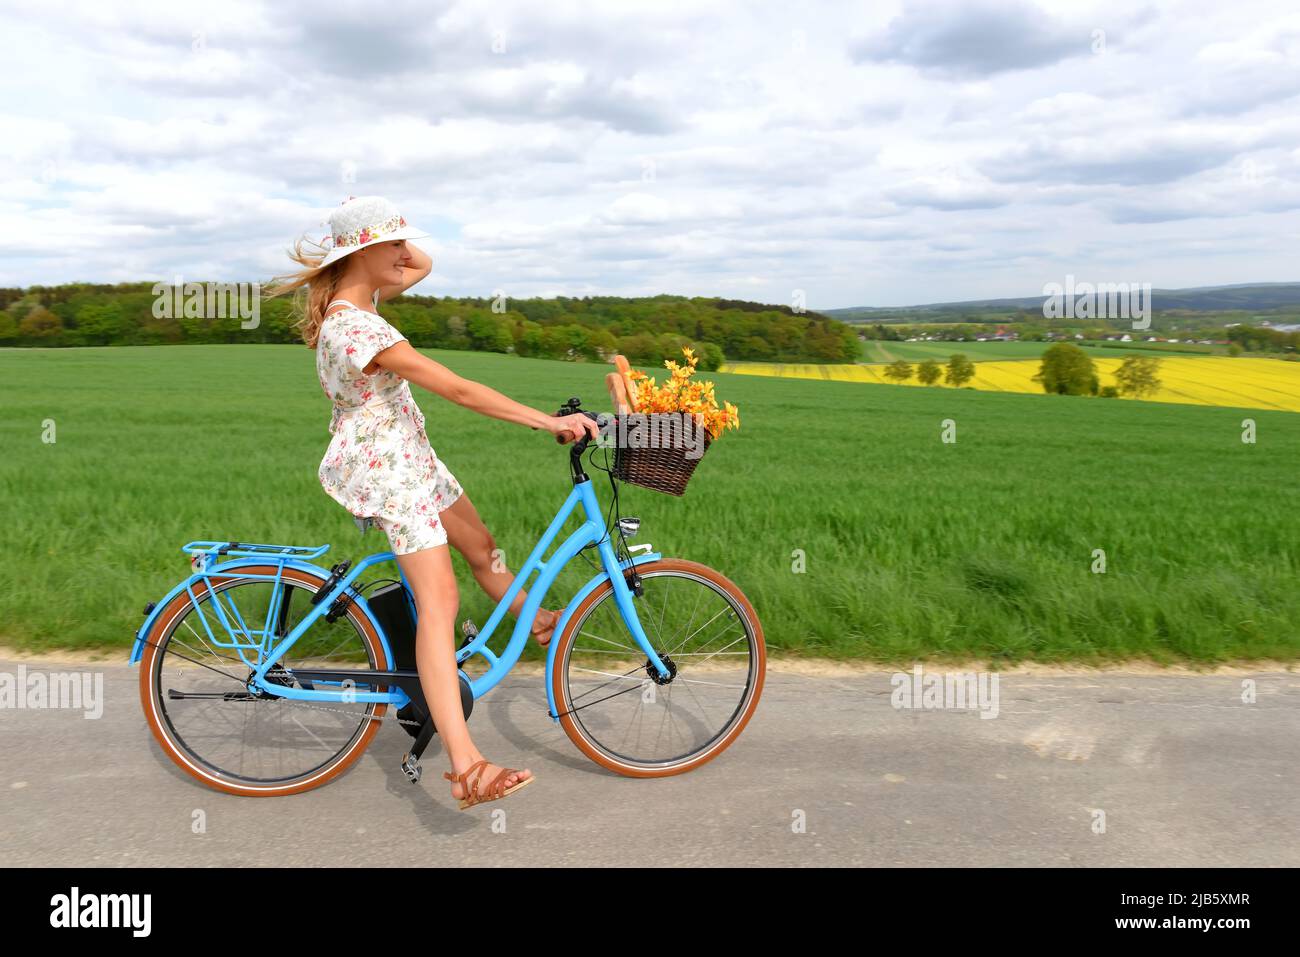 Une jeune femme insouciante apprécie son nouveau vélo hybride électrique. Elle se prend pour une promenade relaxante dans le pays sans utiliser ses pédales de vélo. Banque D'Images